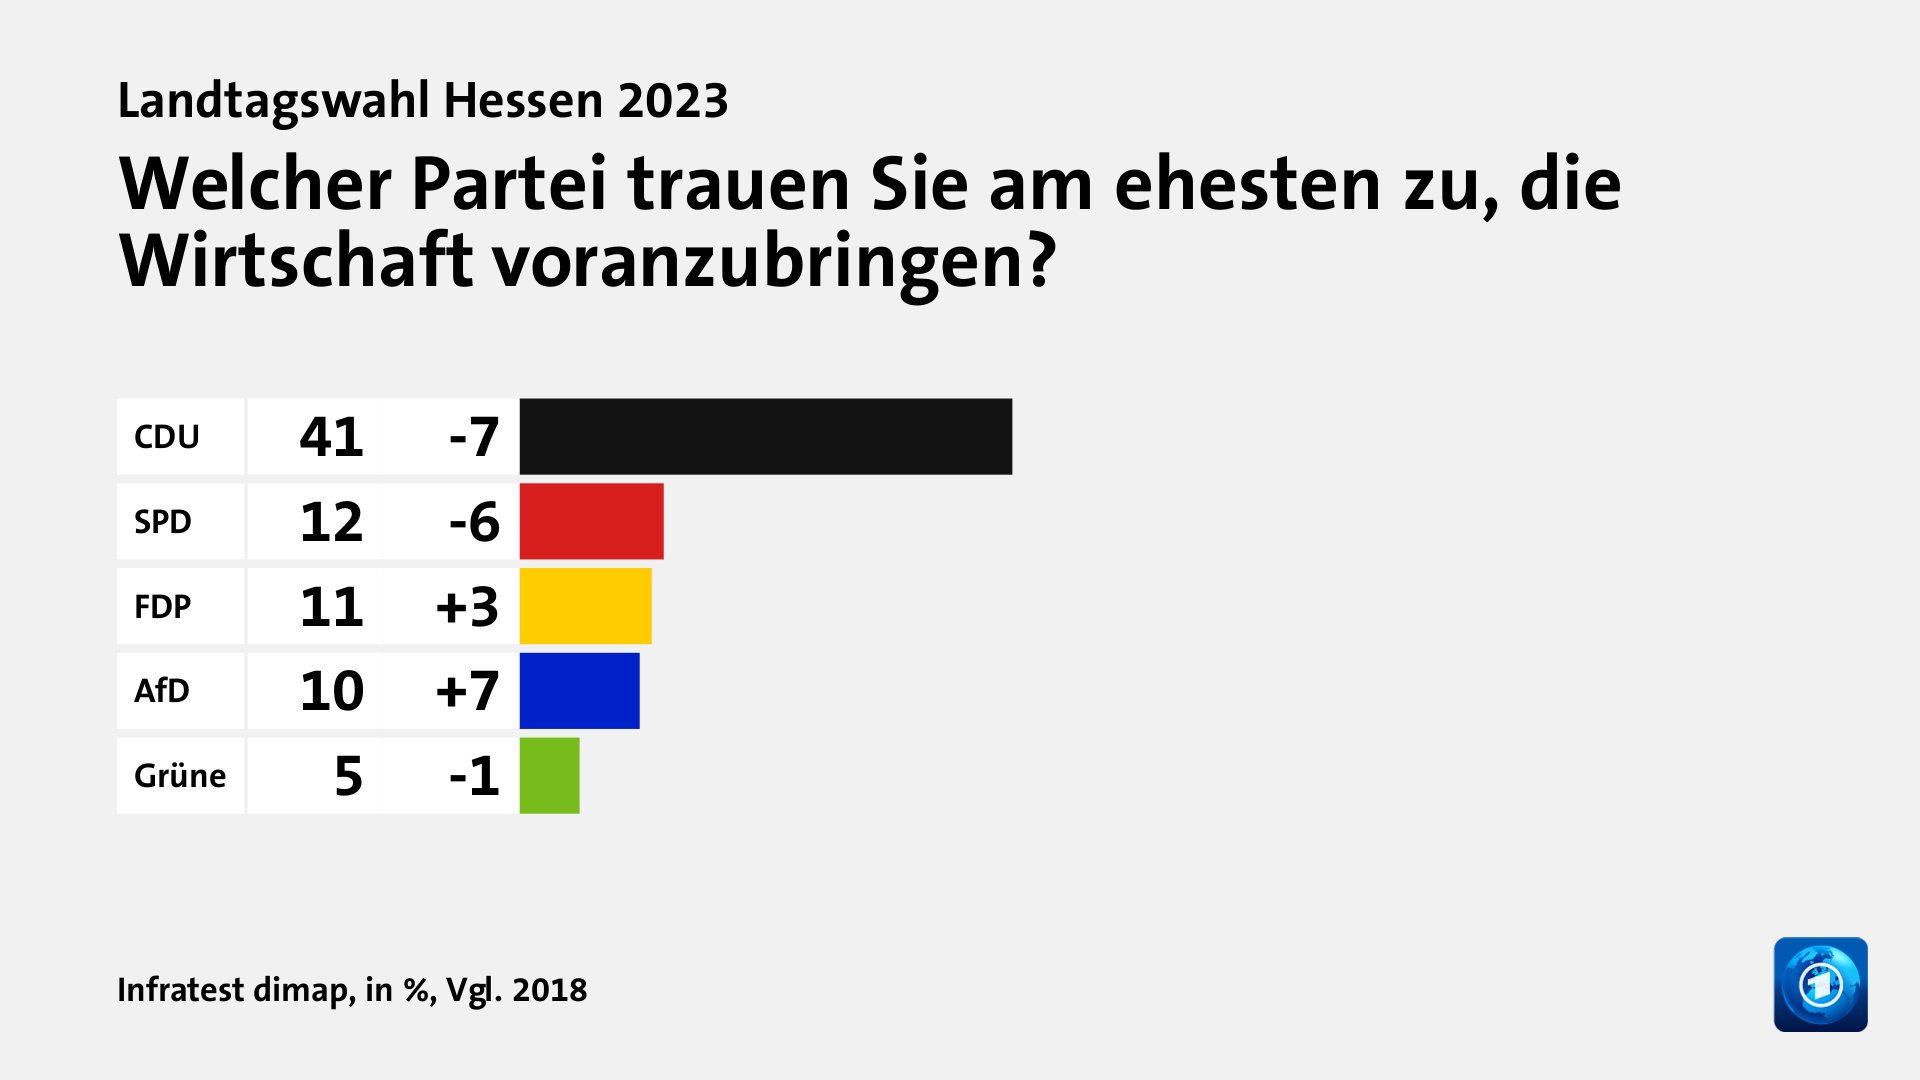 Welcher Partei trauen Sie am ehesten zu, die Wirtschaft voranzubringen?, in %, Vgl. 2018: CDU 41, SPD 12, FDP 11, AfD 10, Grüne 5, Quelle: Infratest dimap